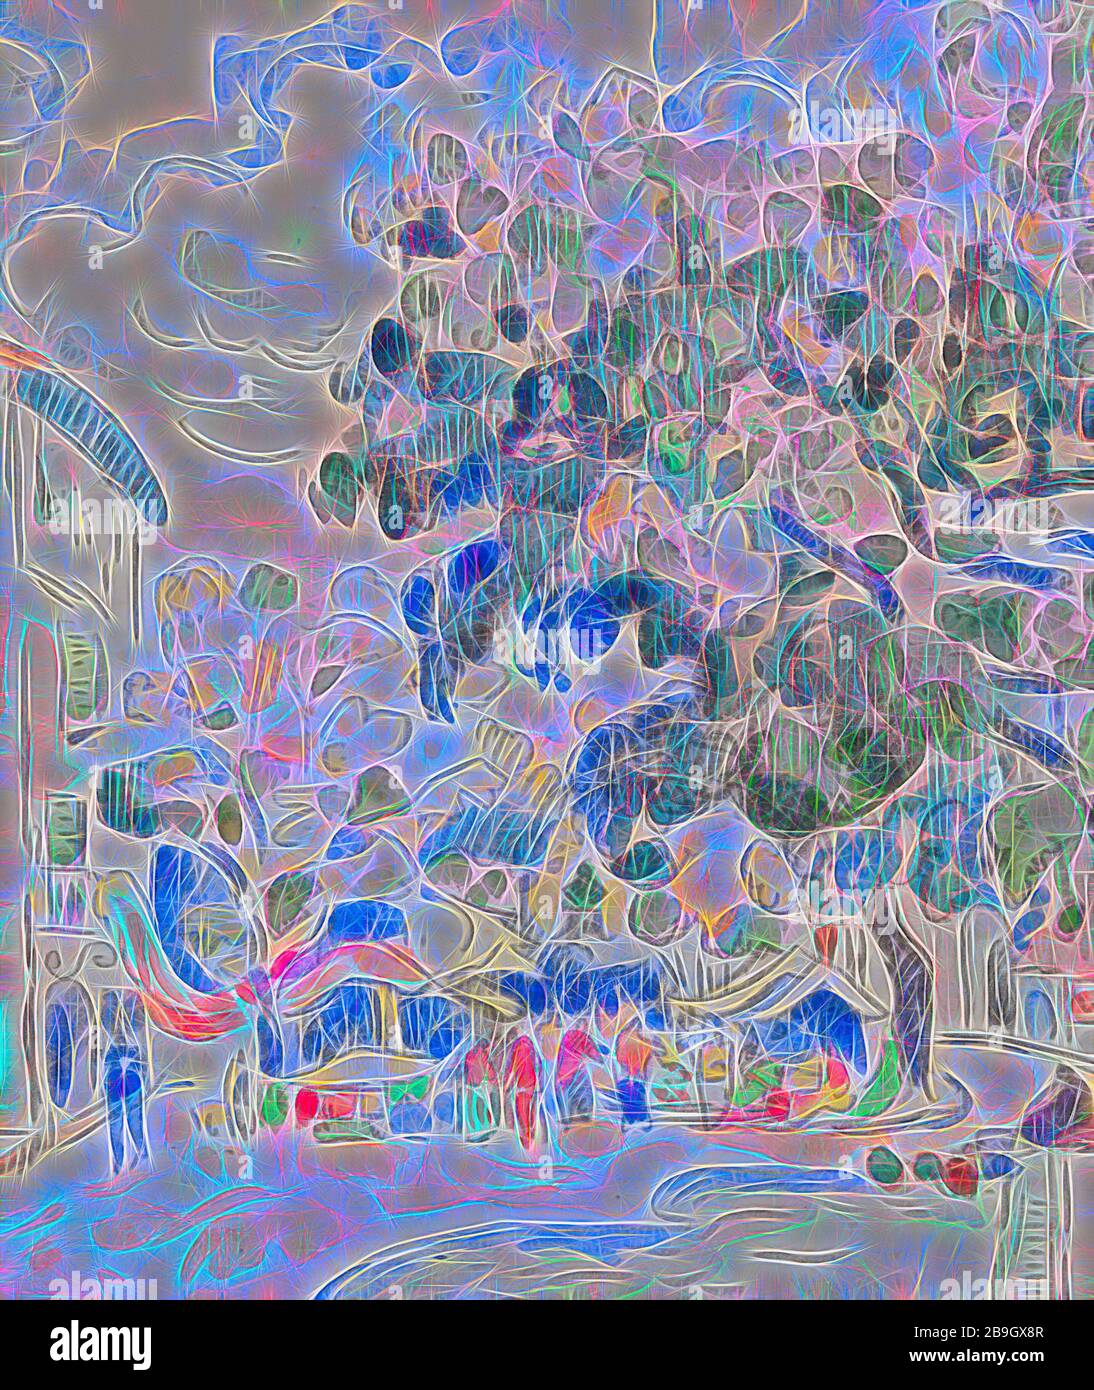 Paul Signac: Antibes, Paul Signac, 1918, Aquarell und Holzkohle auf verlegtem Papier, gesamt (primäre Unterstützung): 11 7/8 x 16 7/8 Zoll (30,2 x 42,9 cm) Stockfoto